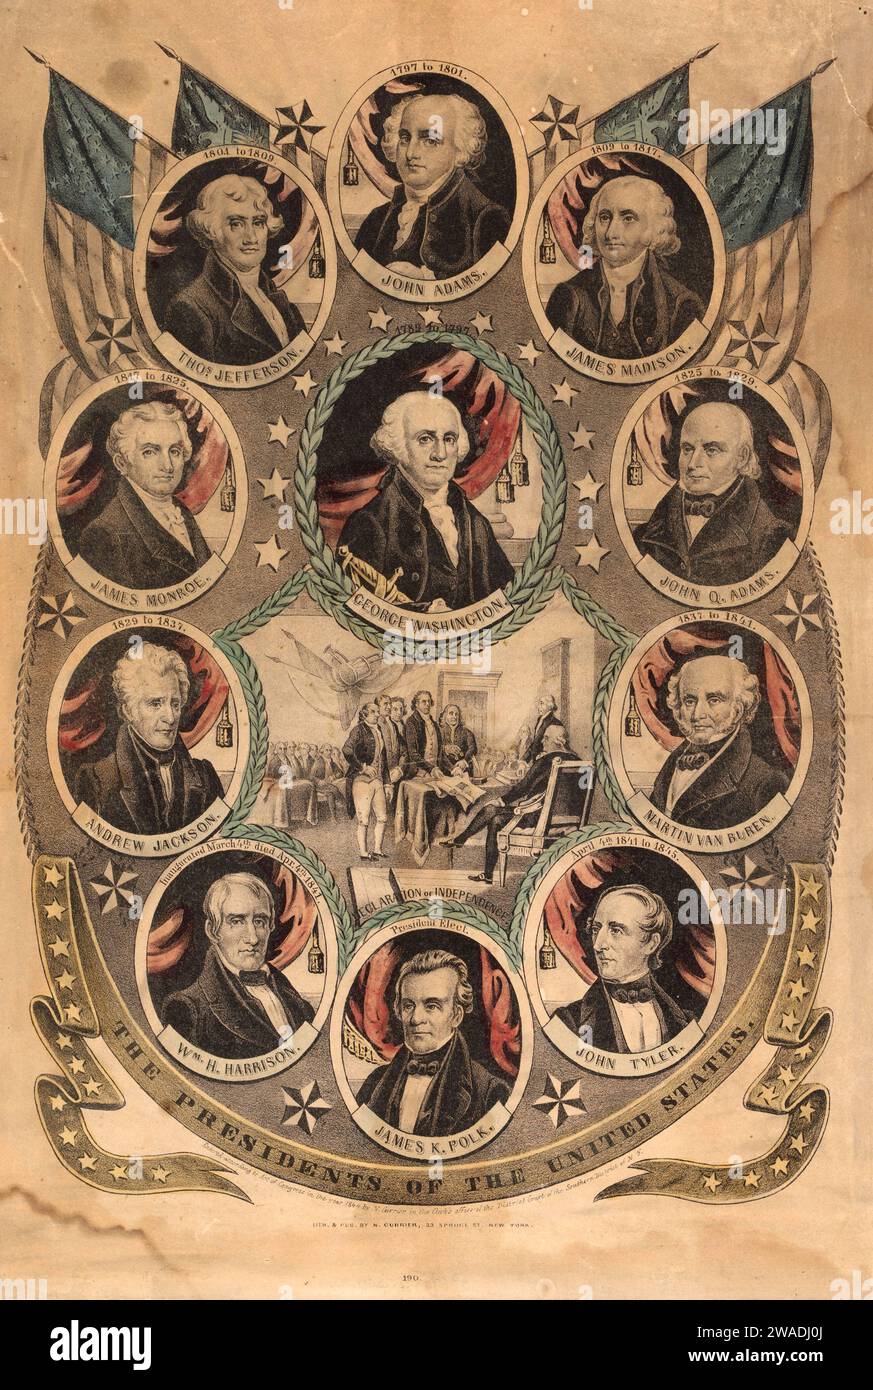 Affiche Litograph Presidents of the United States vers 1844 de Nathaniel Currier, montre également des portraits de présidents américains et la signature de la Déclaration d'indépendance le 4 juillet 1775 Banque D'Images